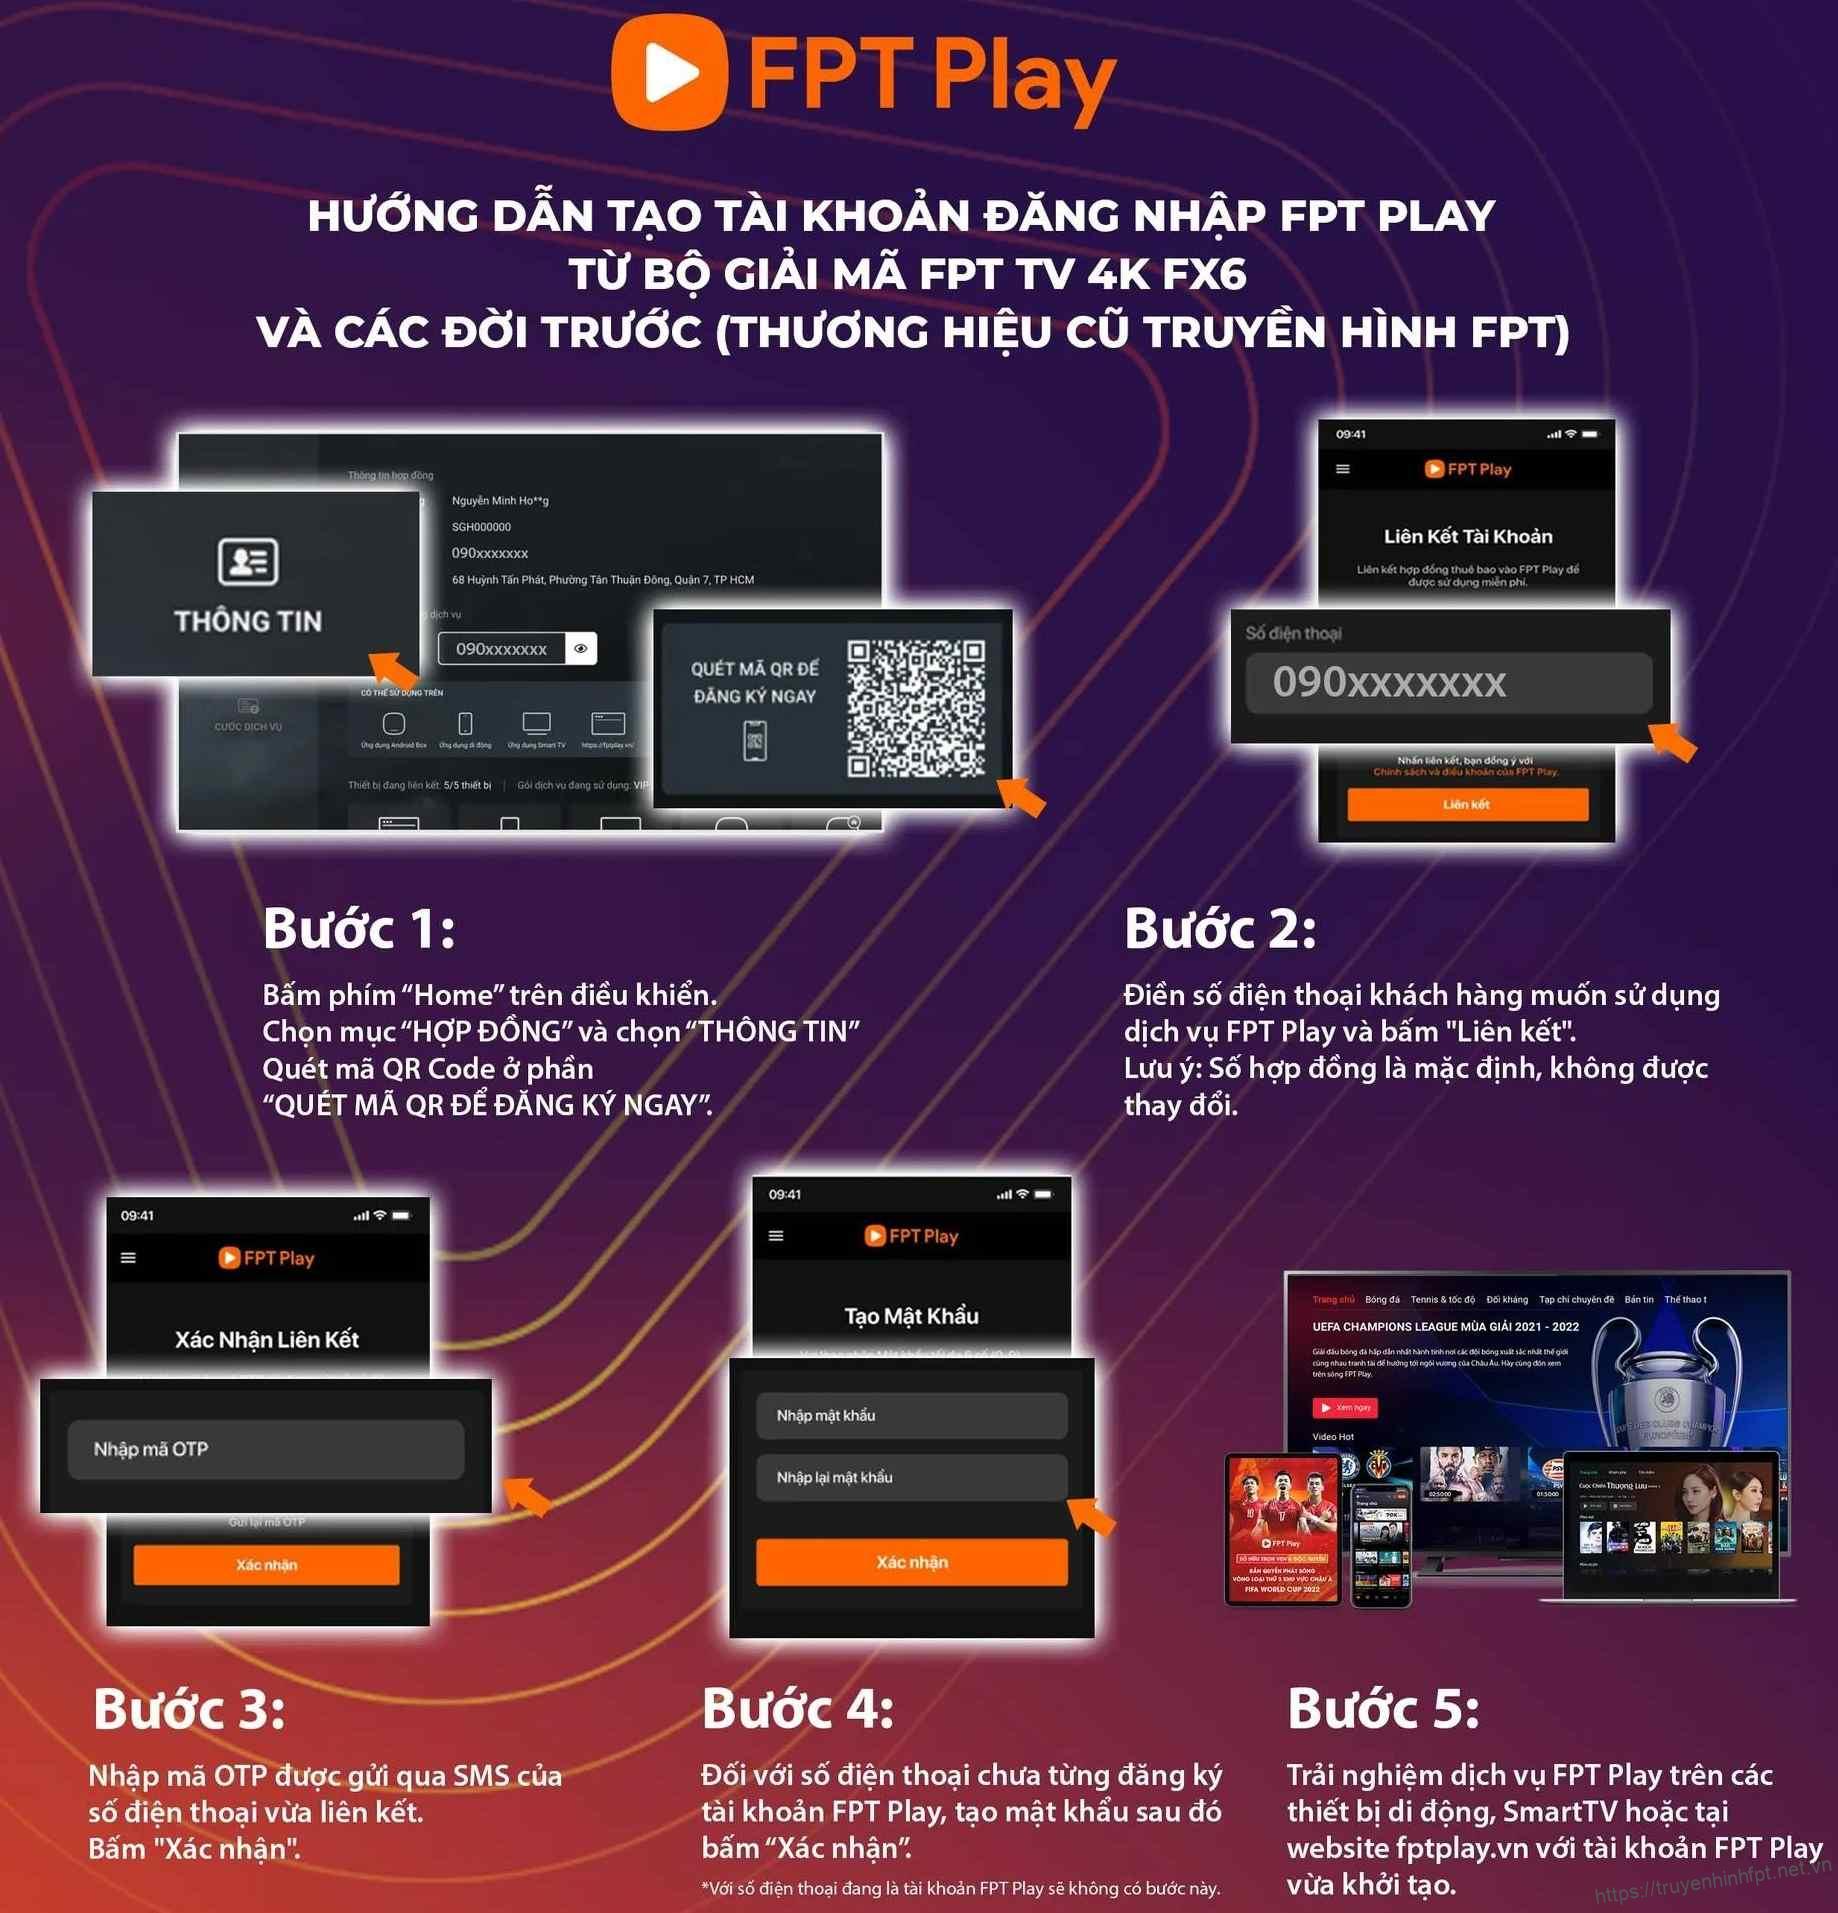 Hướng dẫn lấy tài khoản Fpt play từ hợp đồng truyền hình FPT ngay trên đầu thu